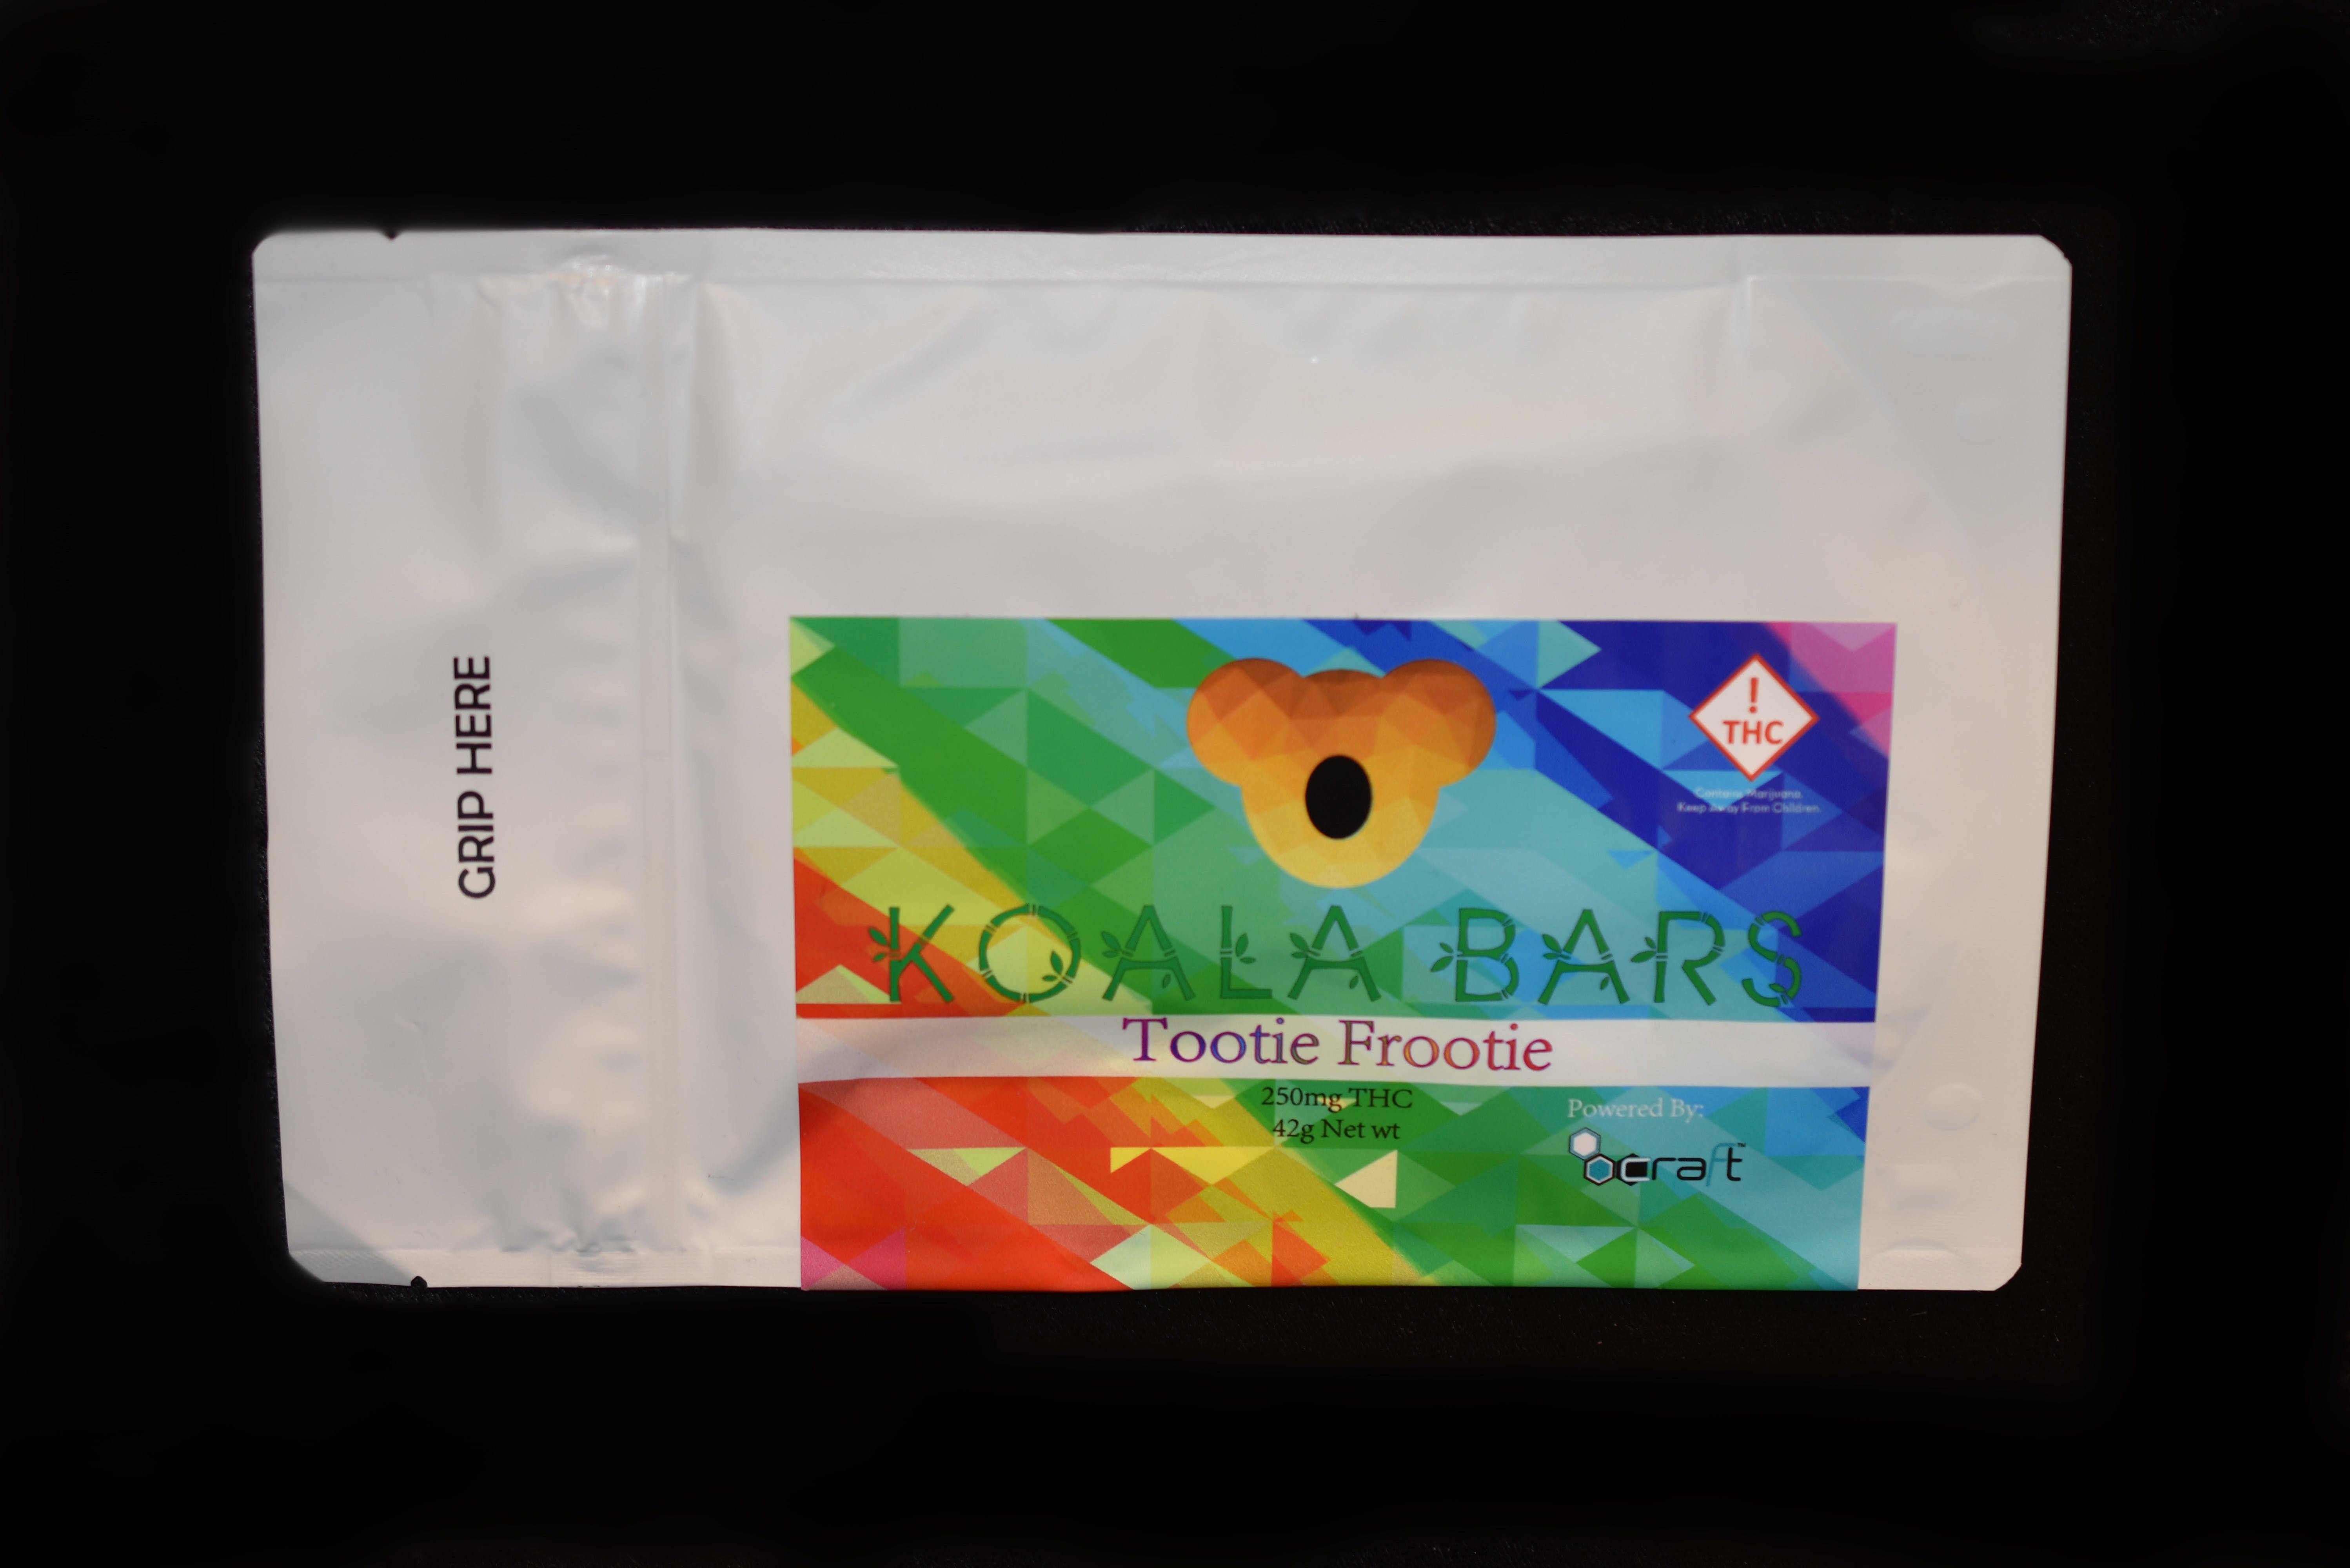 edible-koala-bar-tootie-frootie-250-mg